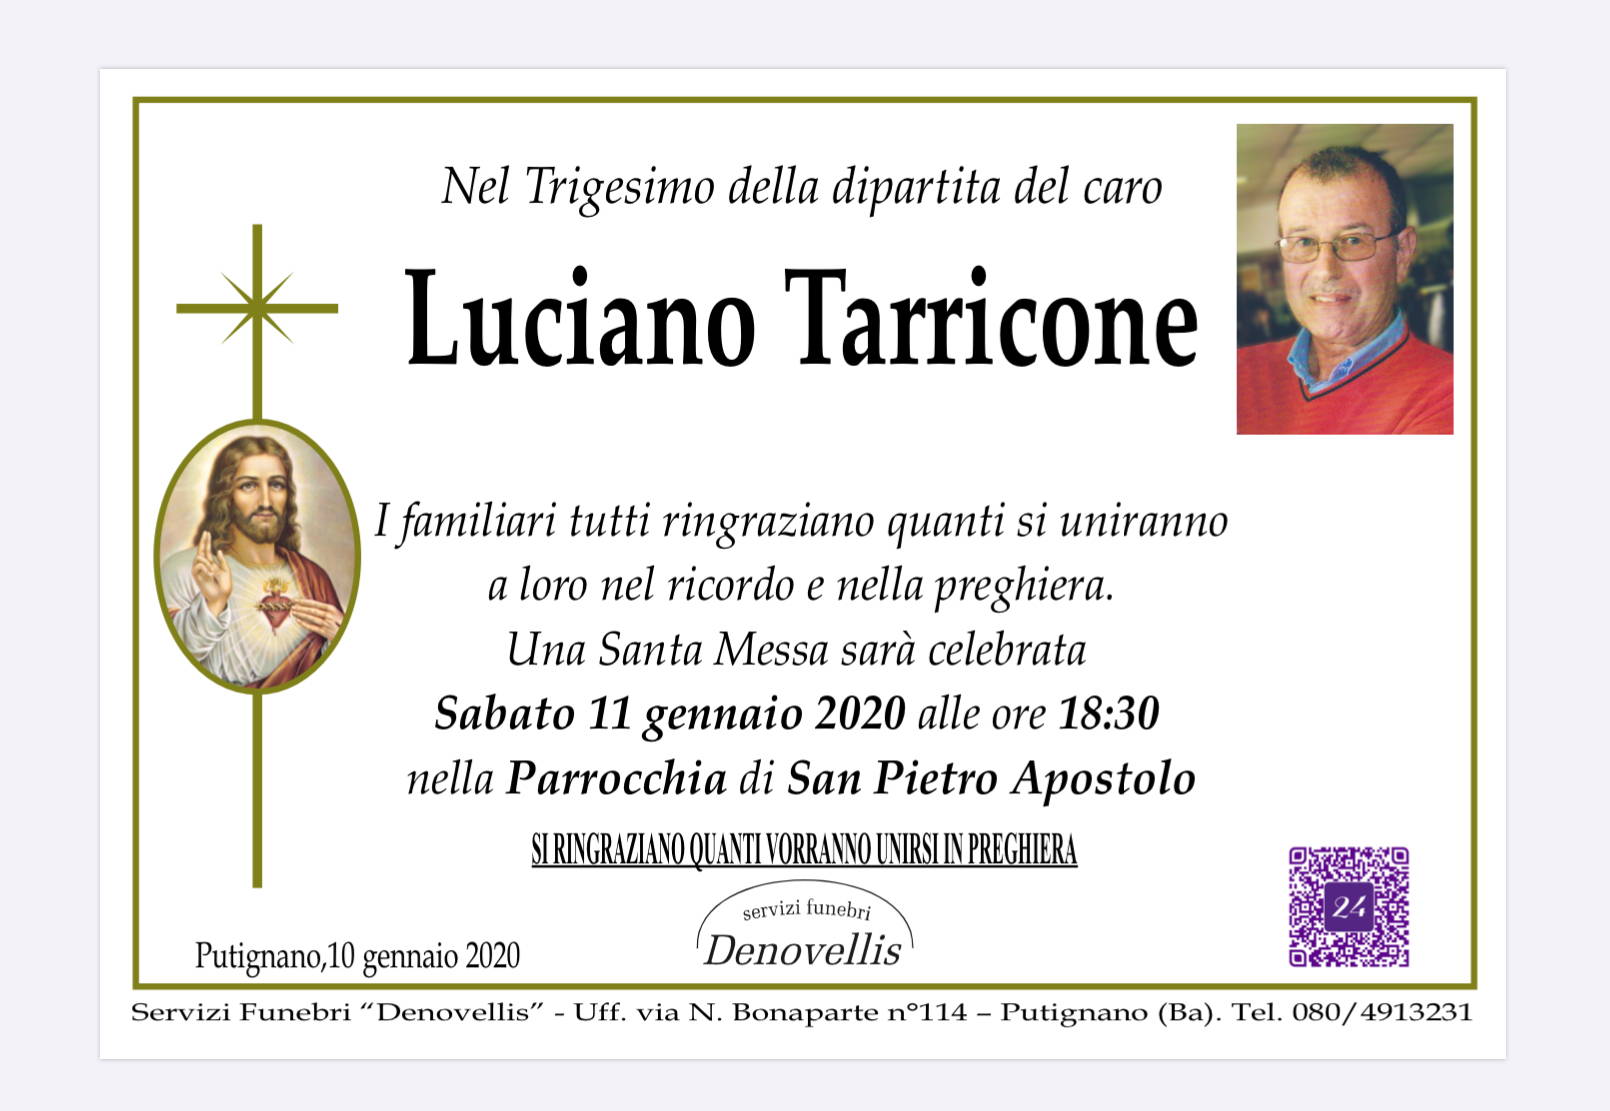 Luciano Tarricone